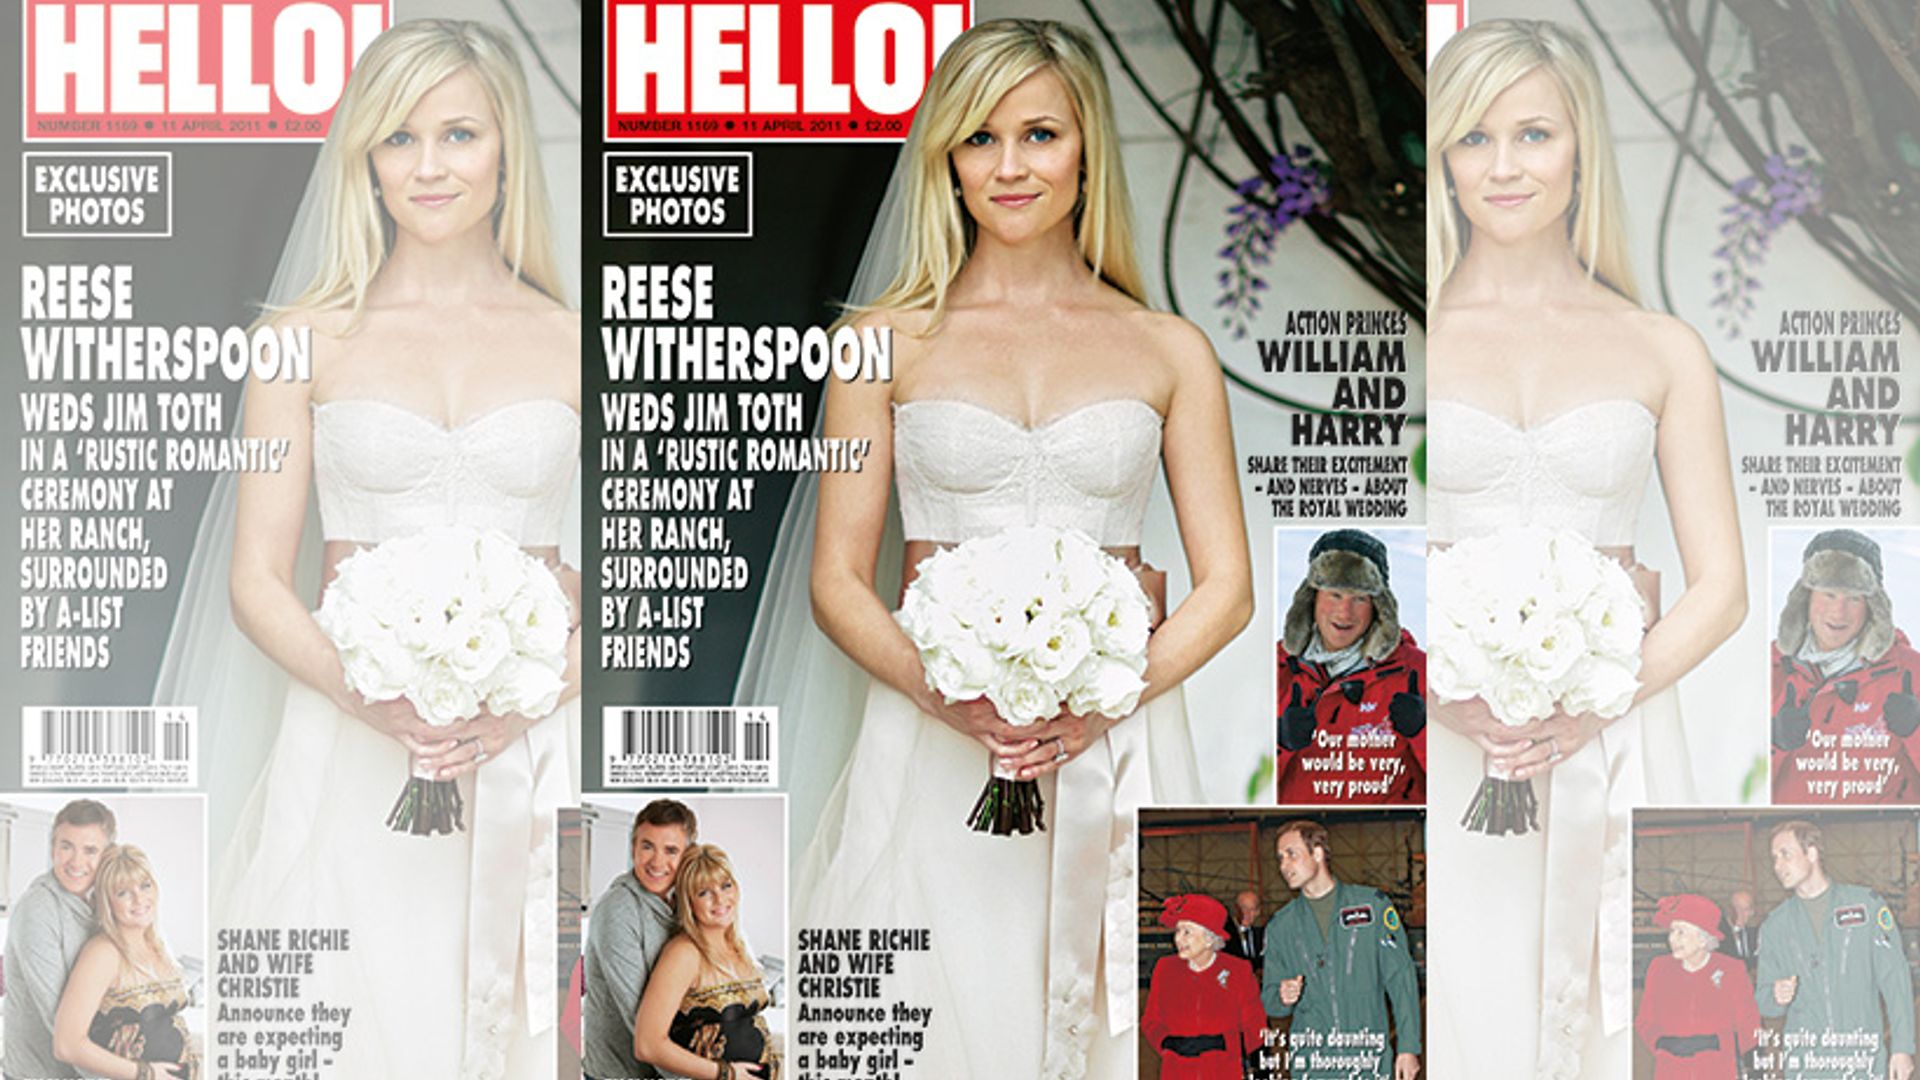 https://www.hellomagazine.com/imagenes/brides/2018040647521/flashback-friday-reese-witherspoon-wedding-jim-toth/0-237-20/reese-witherspoon-wedding-t.jpg}